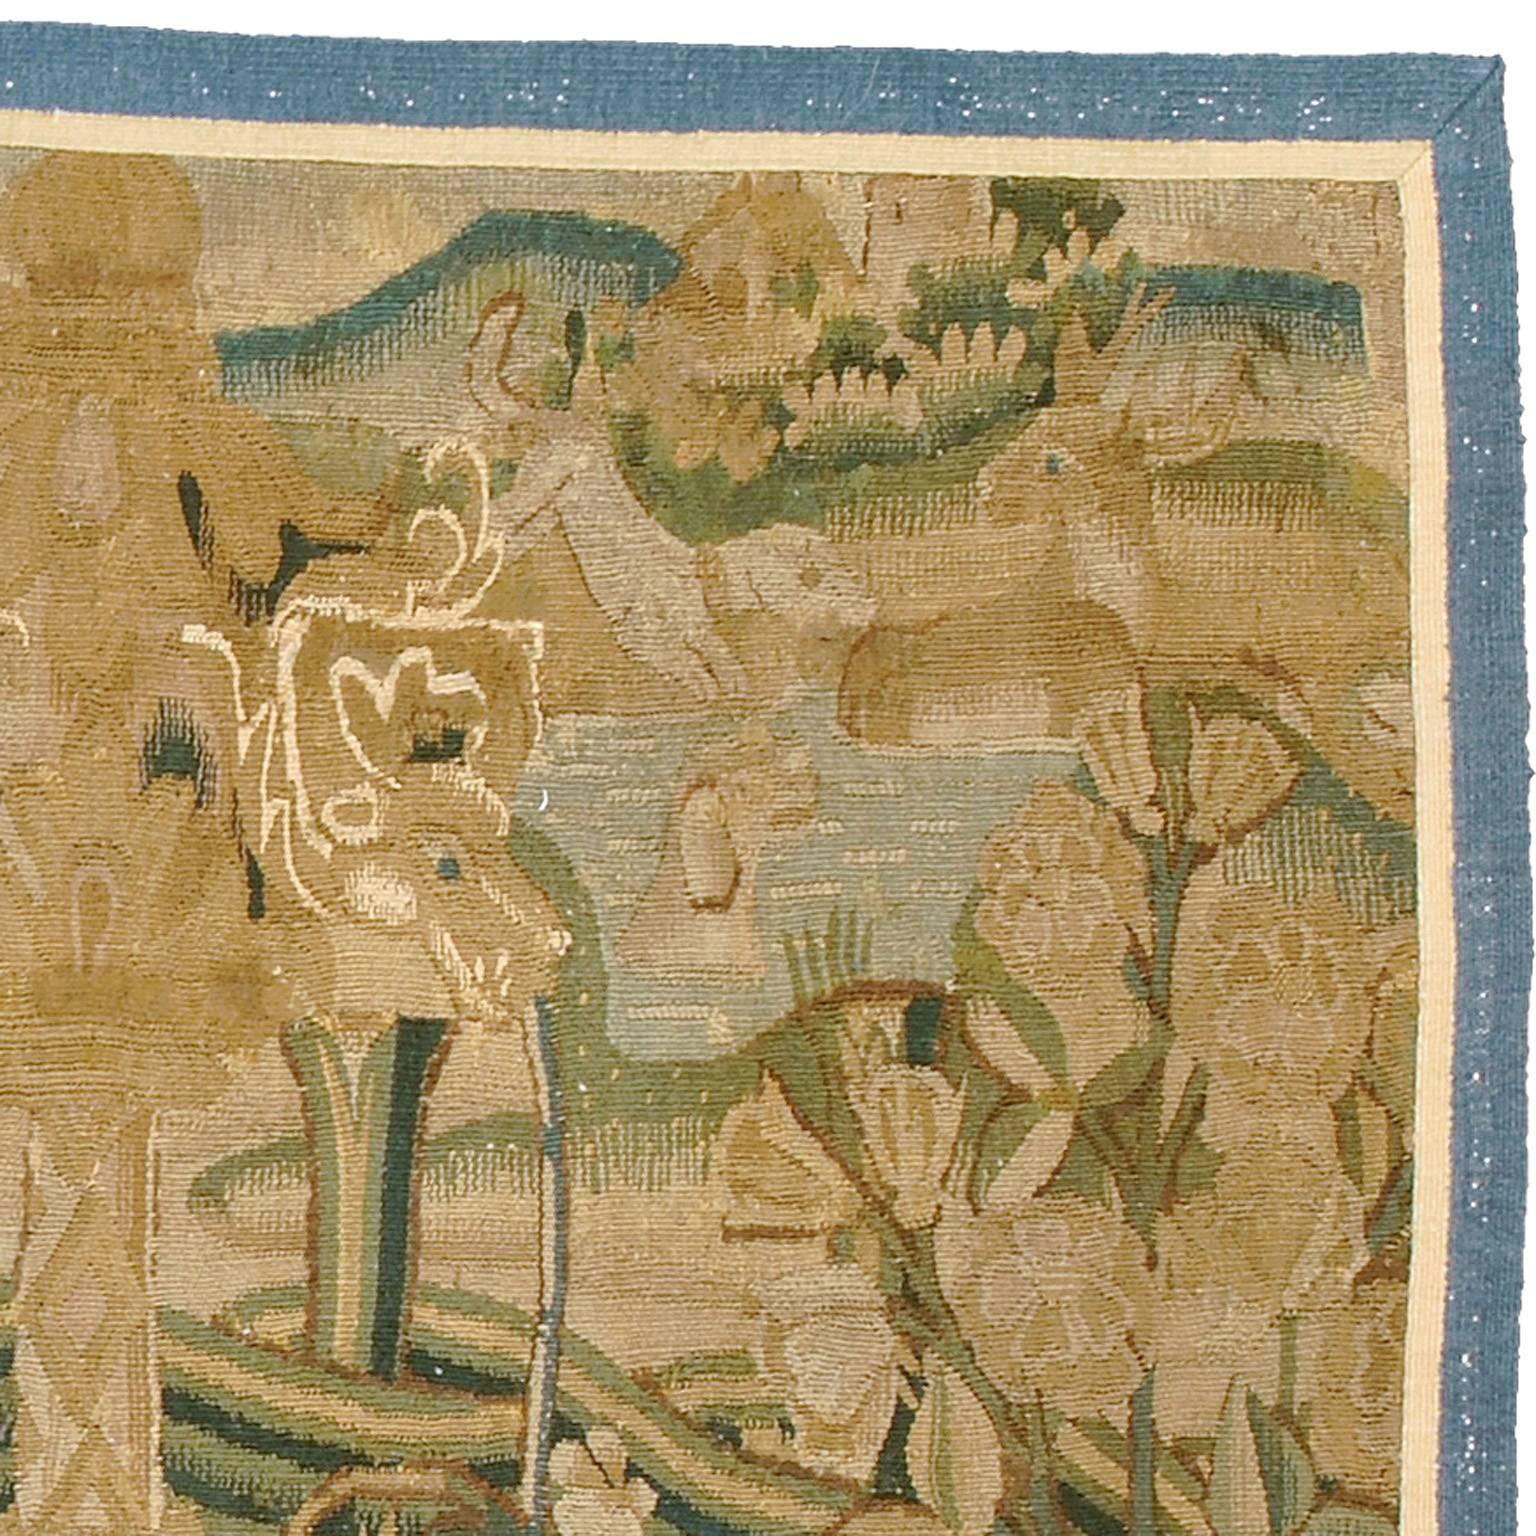 Tapisserie flamande du début du XVIe siècle, probablement de Tournai.
Provenance : CIRCA, Florence, vers 1960.